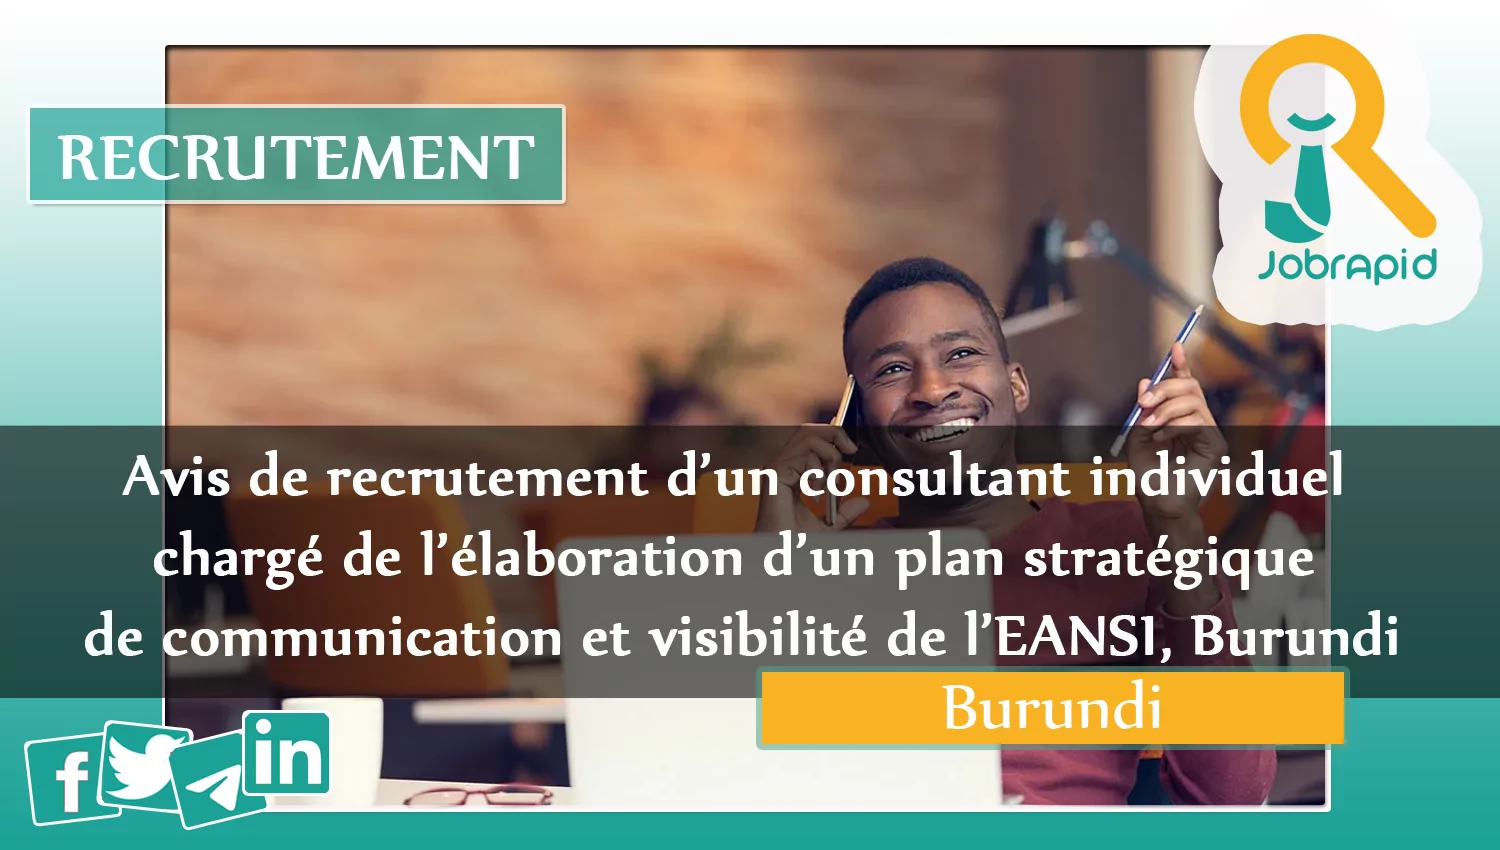 Avis de recrutement d’un consultant individuel chargé de l’élaboration d’un plan stratégique de communication et visibilité de l’EANSI, Burundi